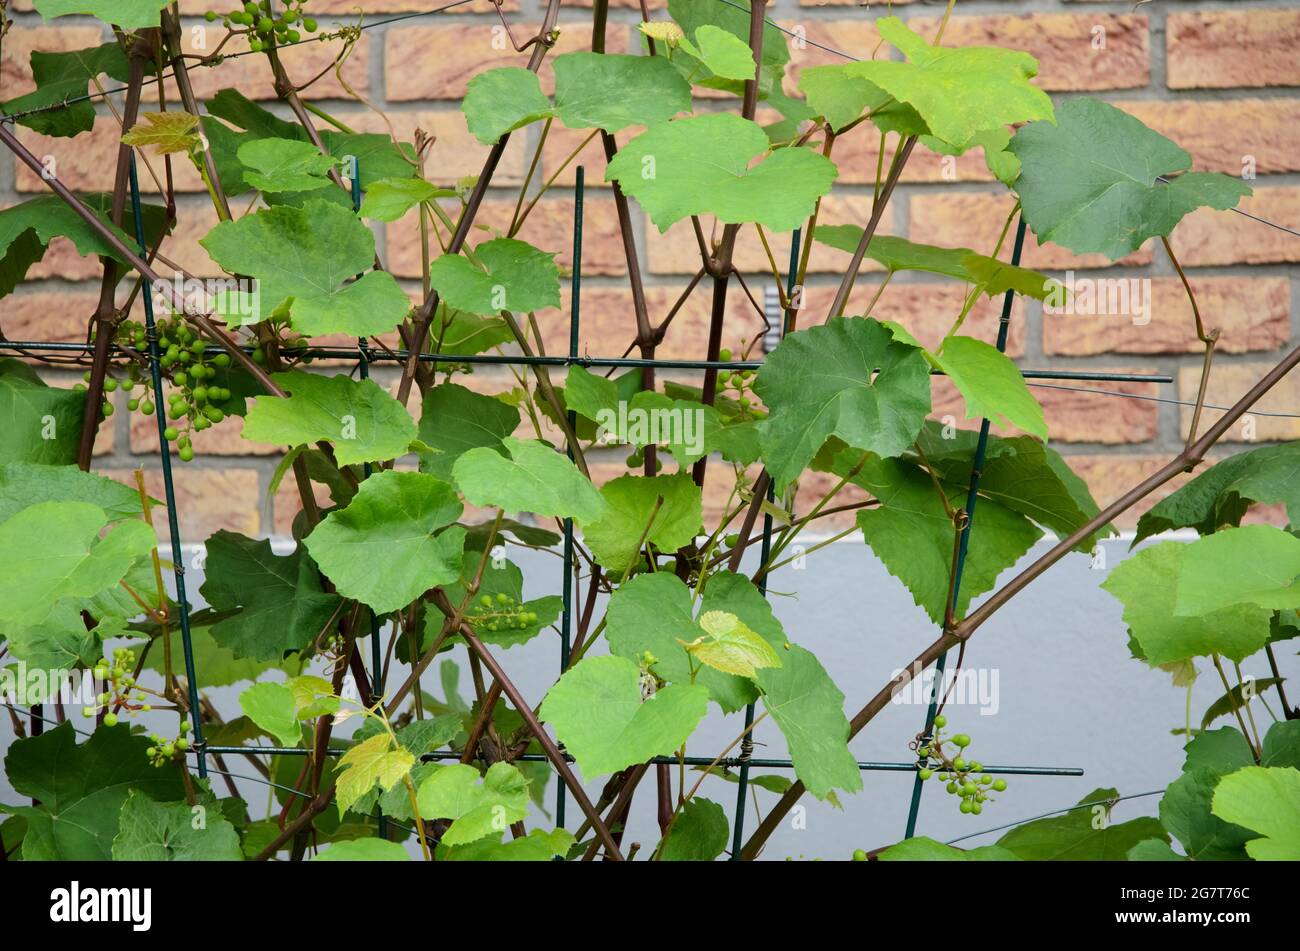 Vitis vinifera, junge grüne gemeinsame Weinrebenblätter, Weinrebenpflanze im Garten Stockfoto